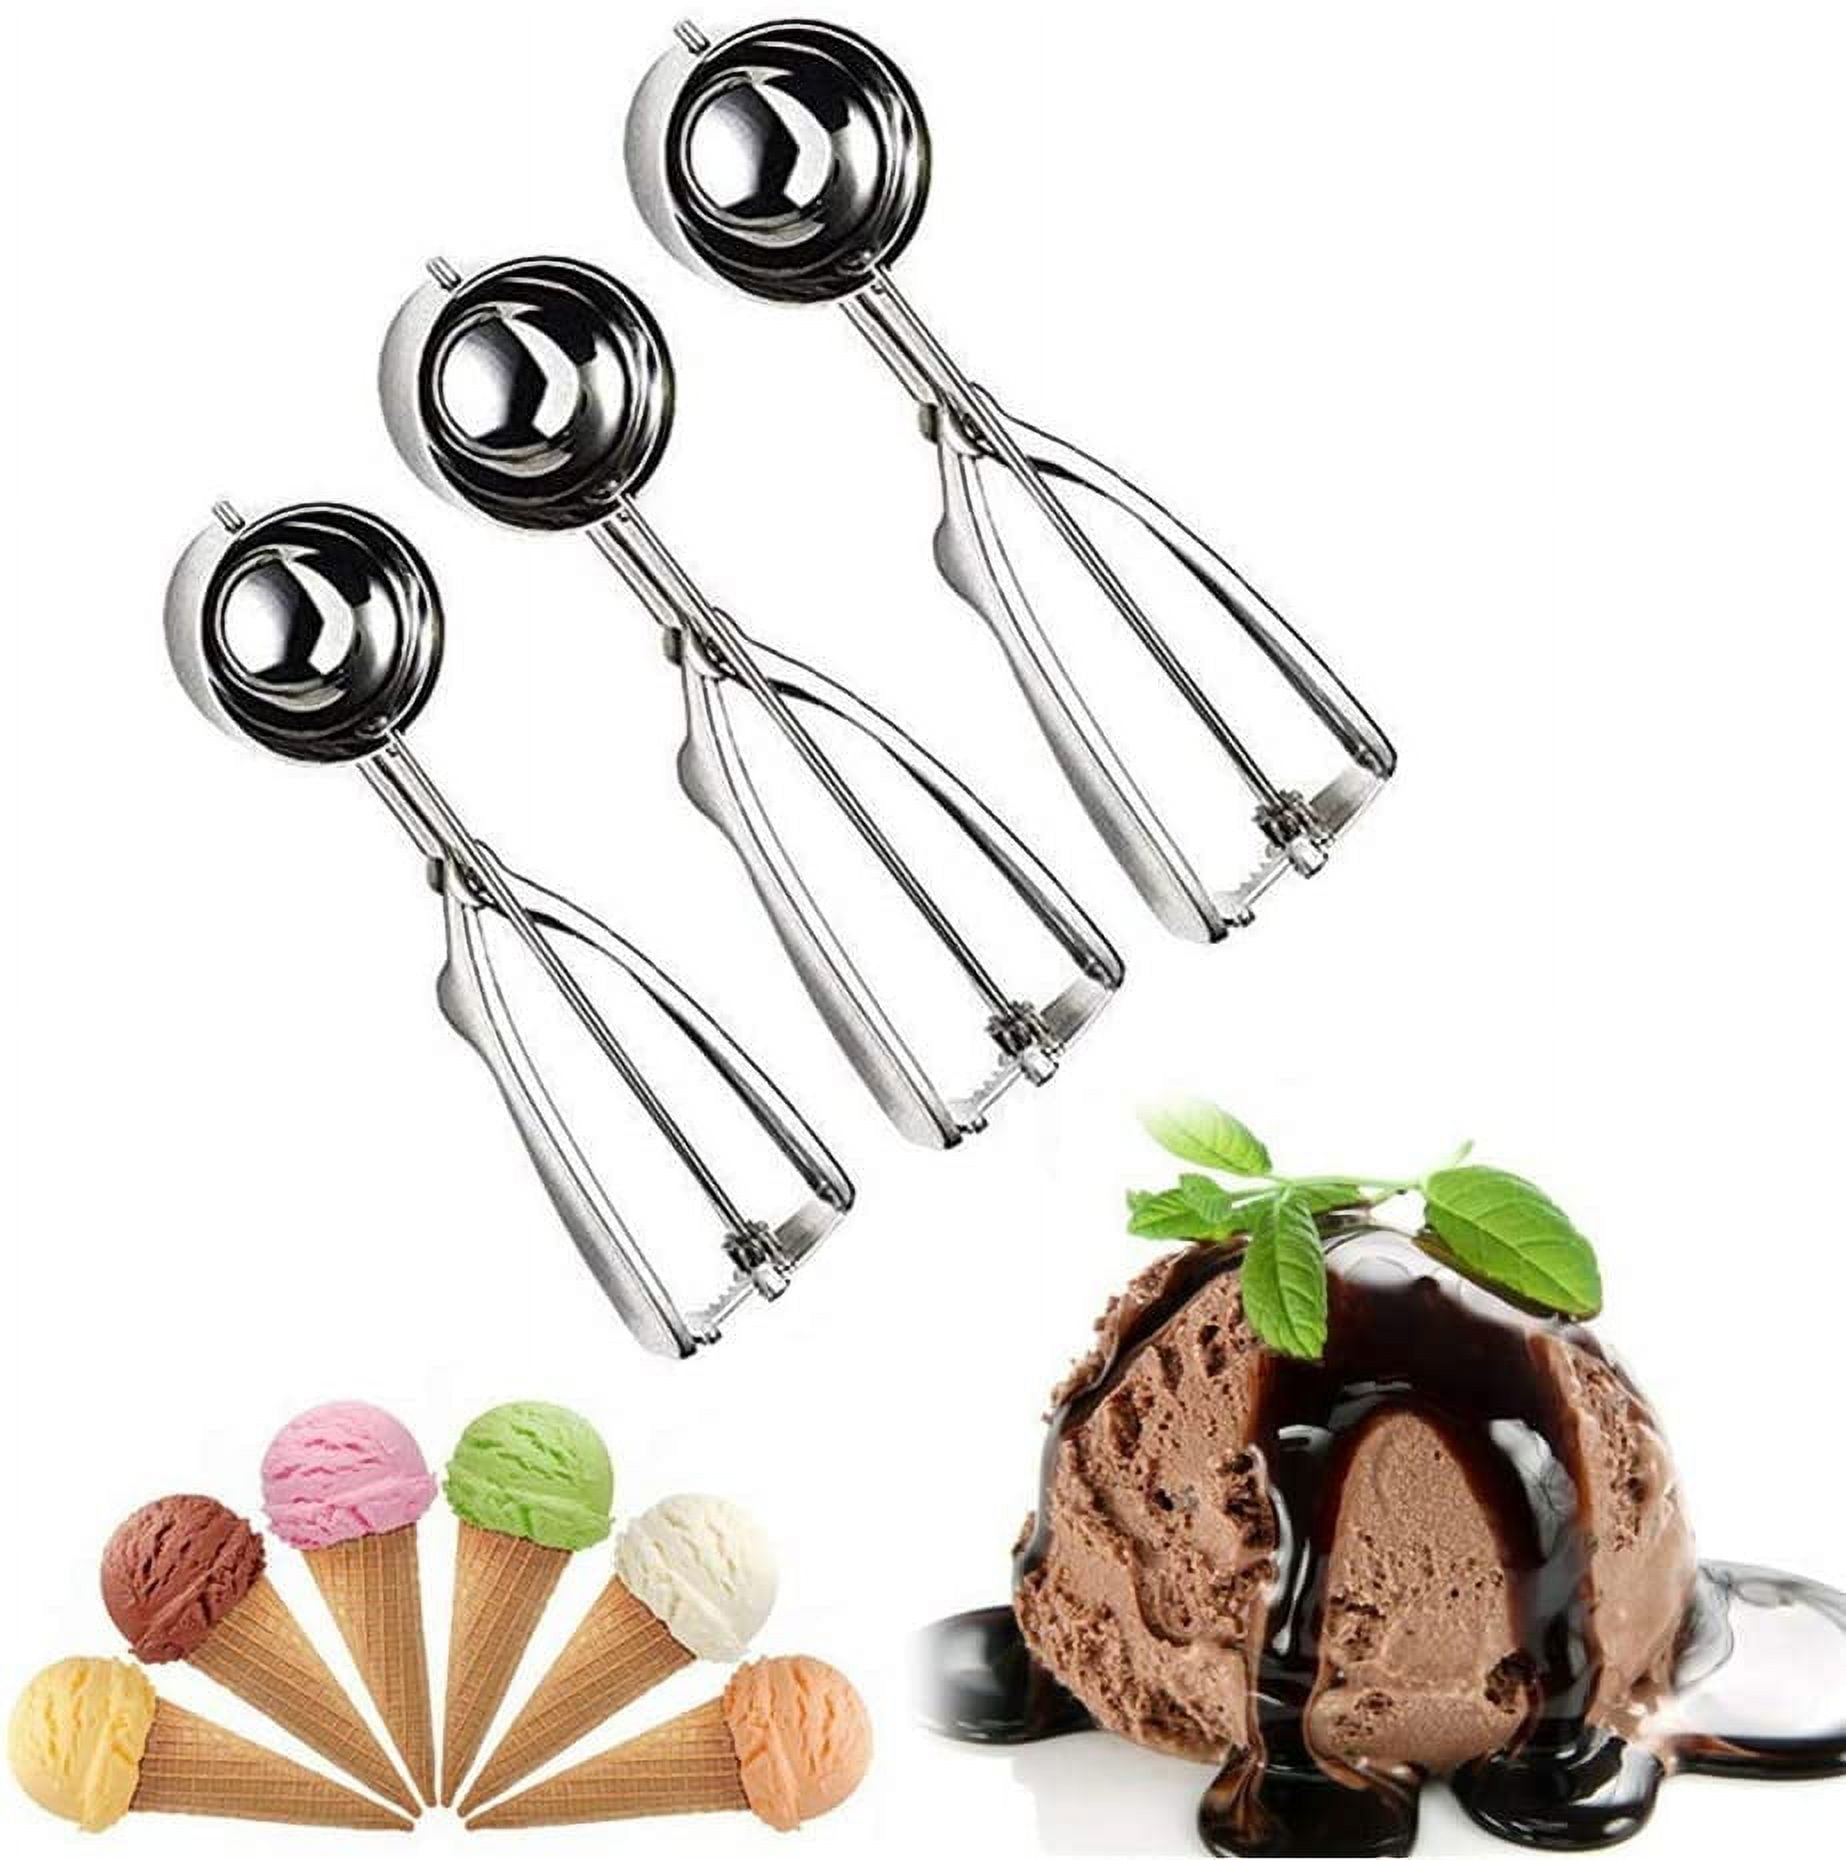 Jenaluca Ice Cream Scoop - Cookie Scoop - Melon Baller - 18/8 Stainless Steel - Gift Set of 3